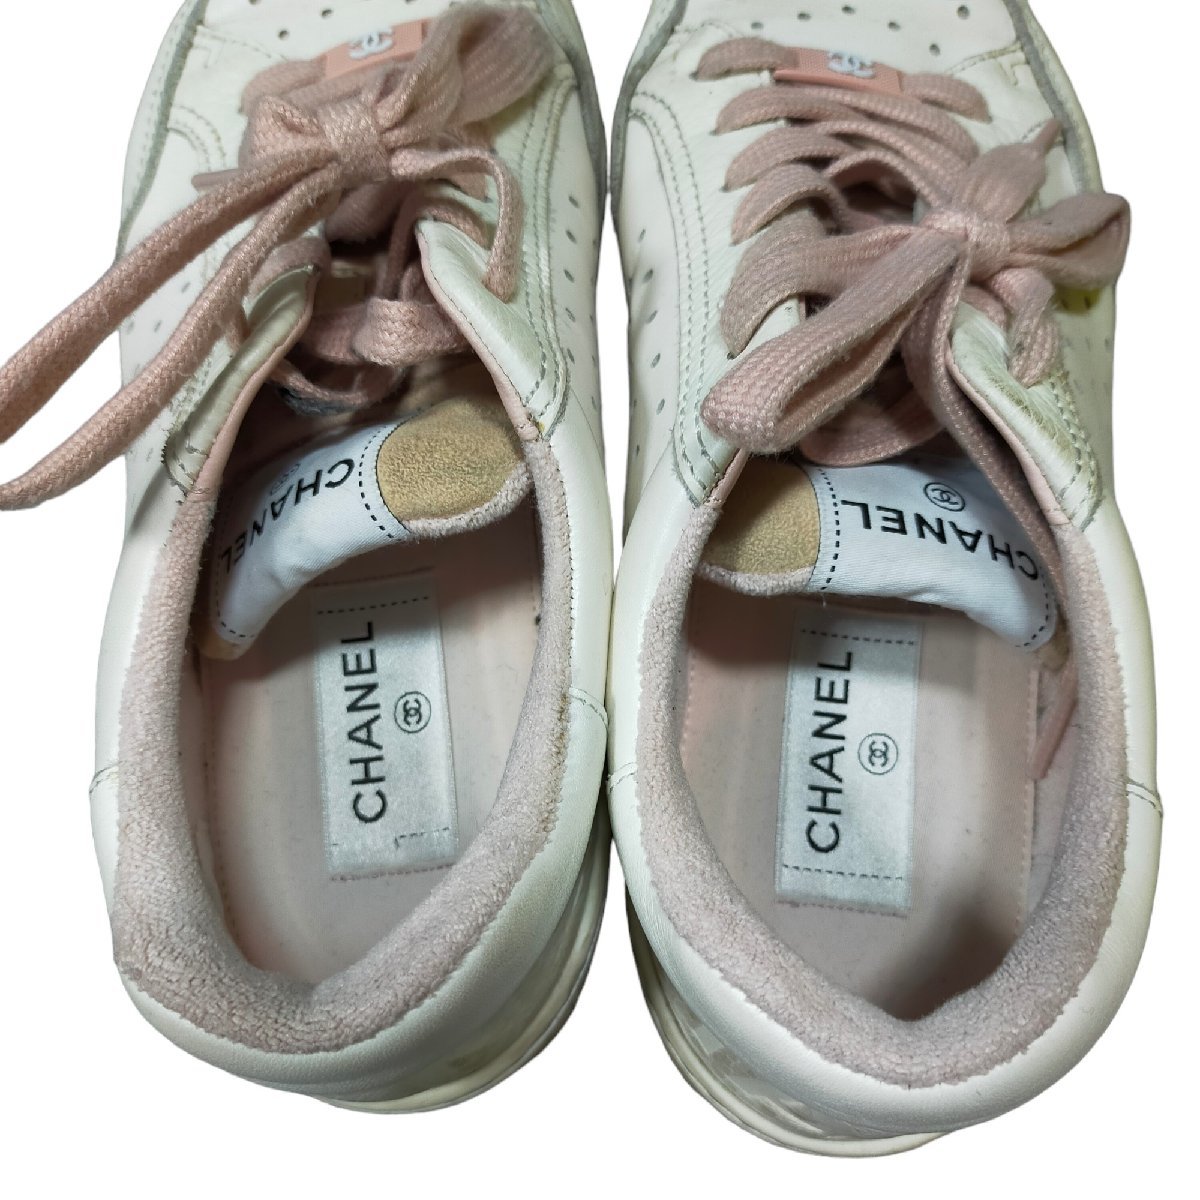 ◆中古品◆CHANEL シャネル スニーカー レディース シューズ ピンク 靴 39 日本サイズ約26cm 保存袋あり J45088NC_画像4